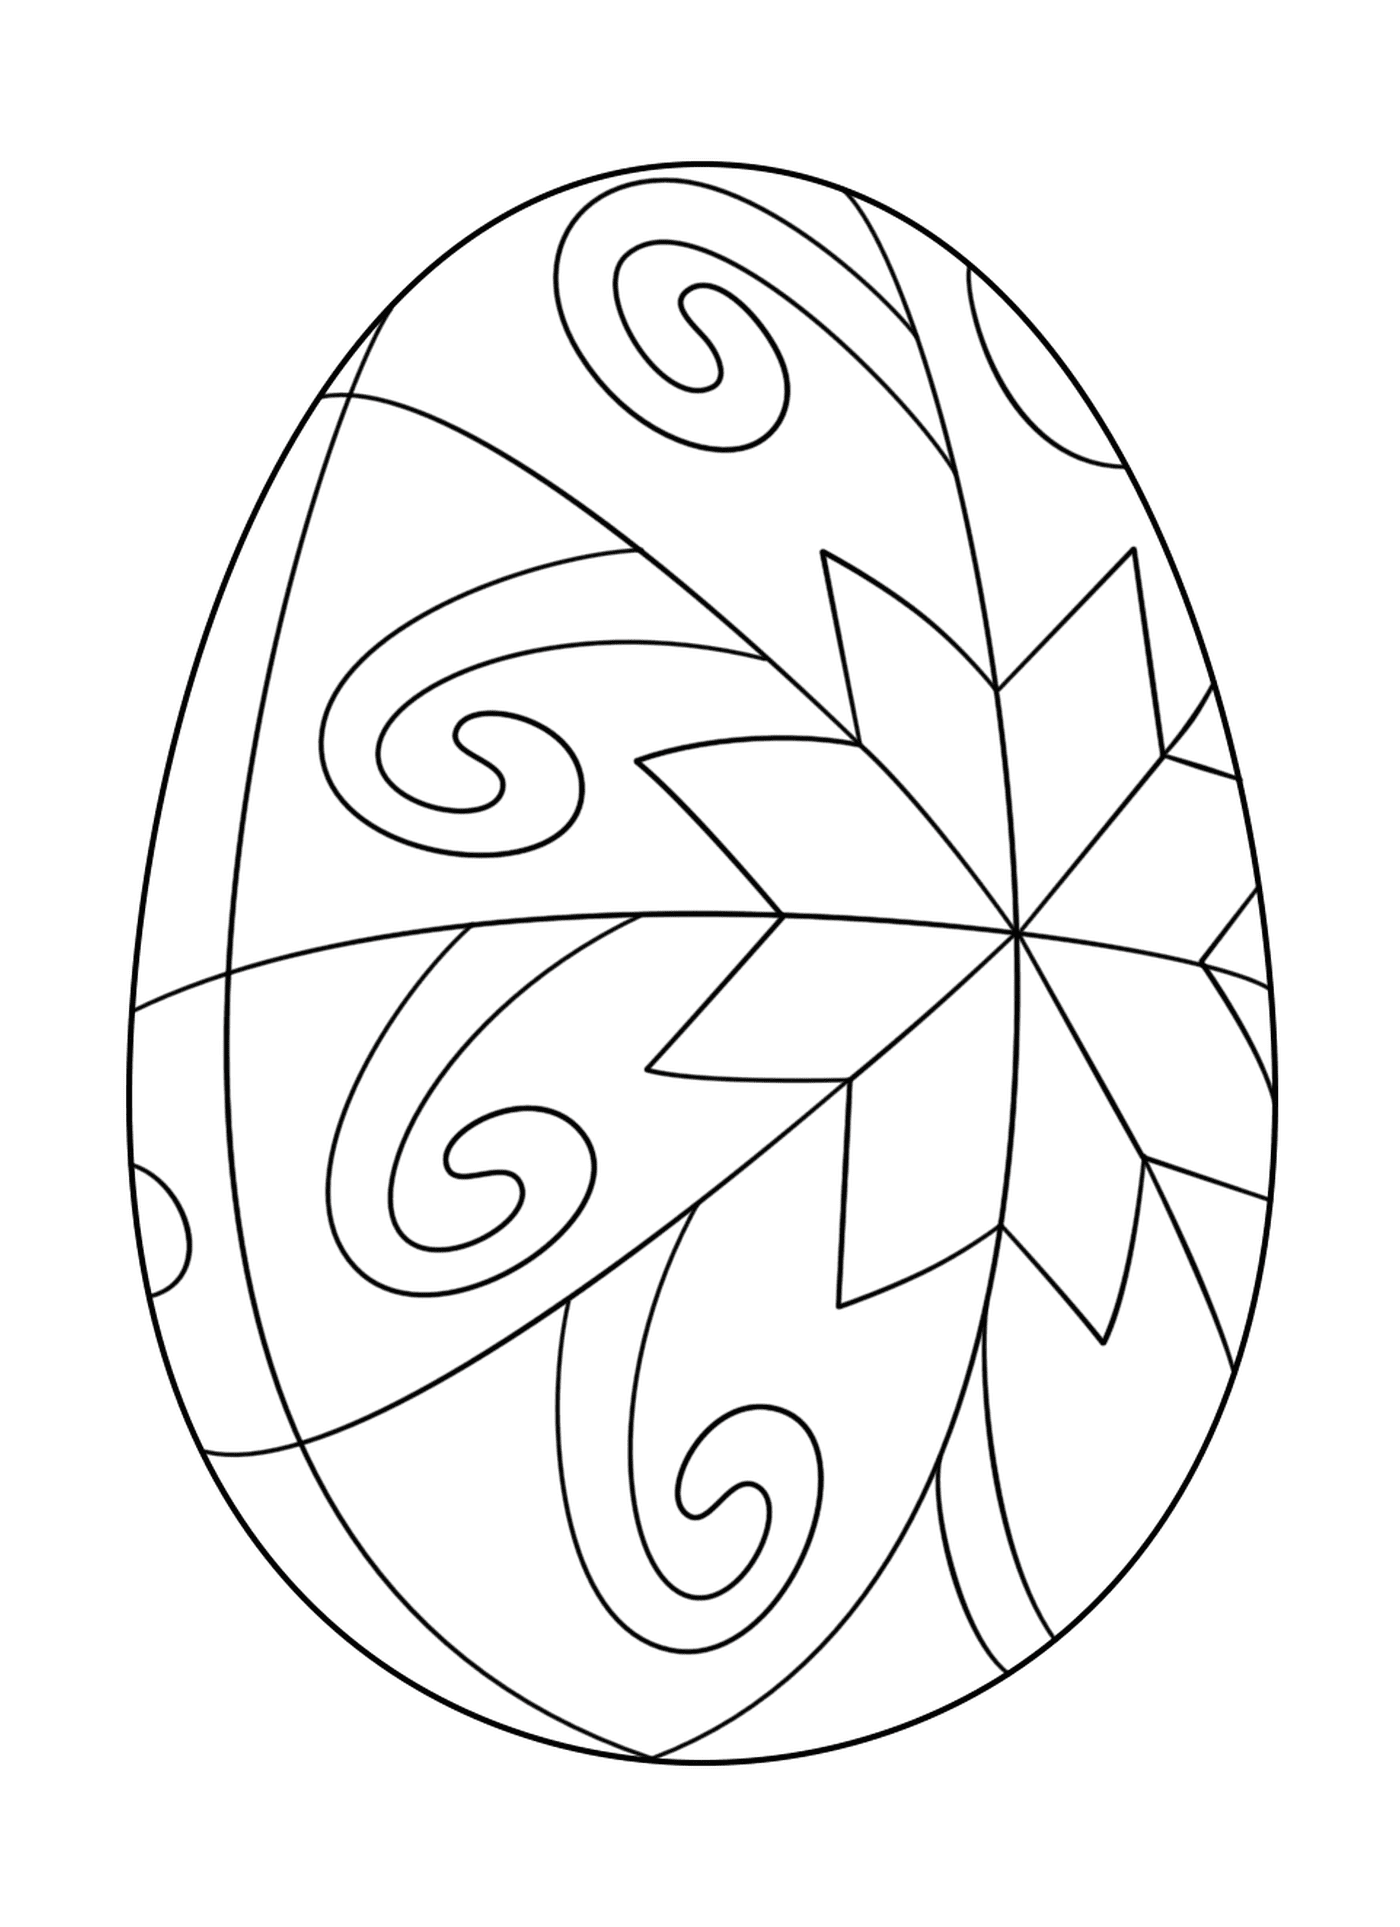  Ovo de Páscoa com motivo estrela, ovo decorado 